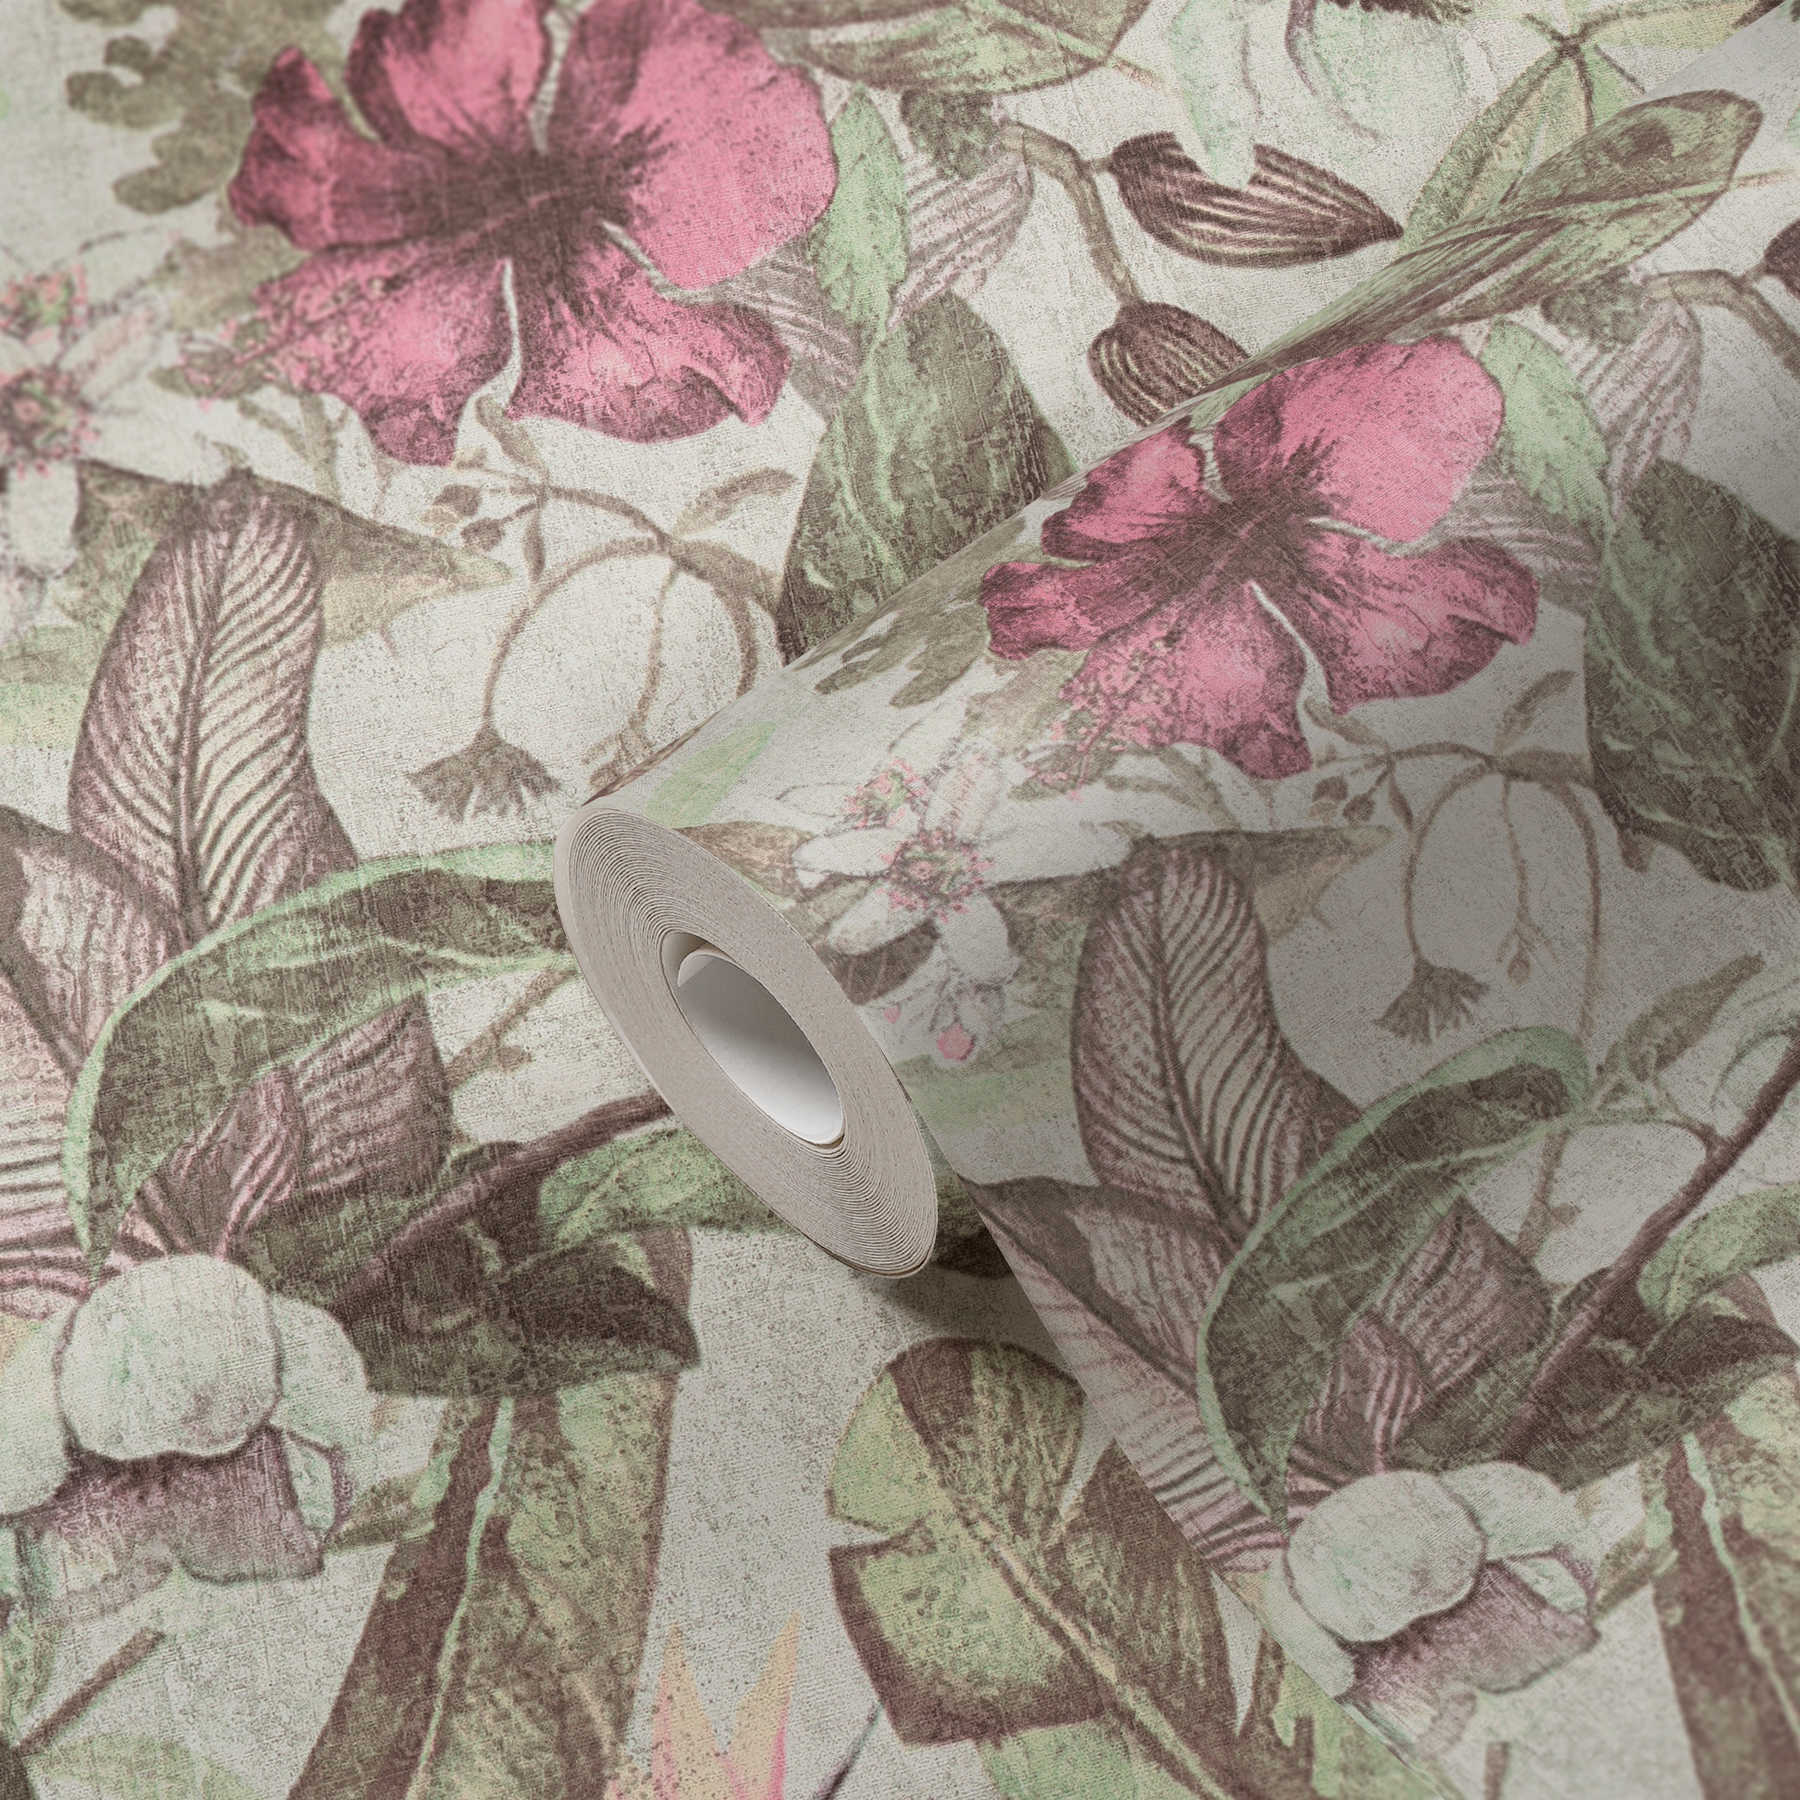             behang bloemenpatroon, tropische stijl & textiel look - roze, groen, bruin
        